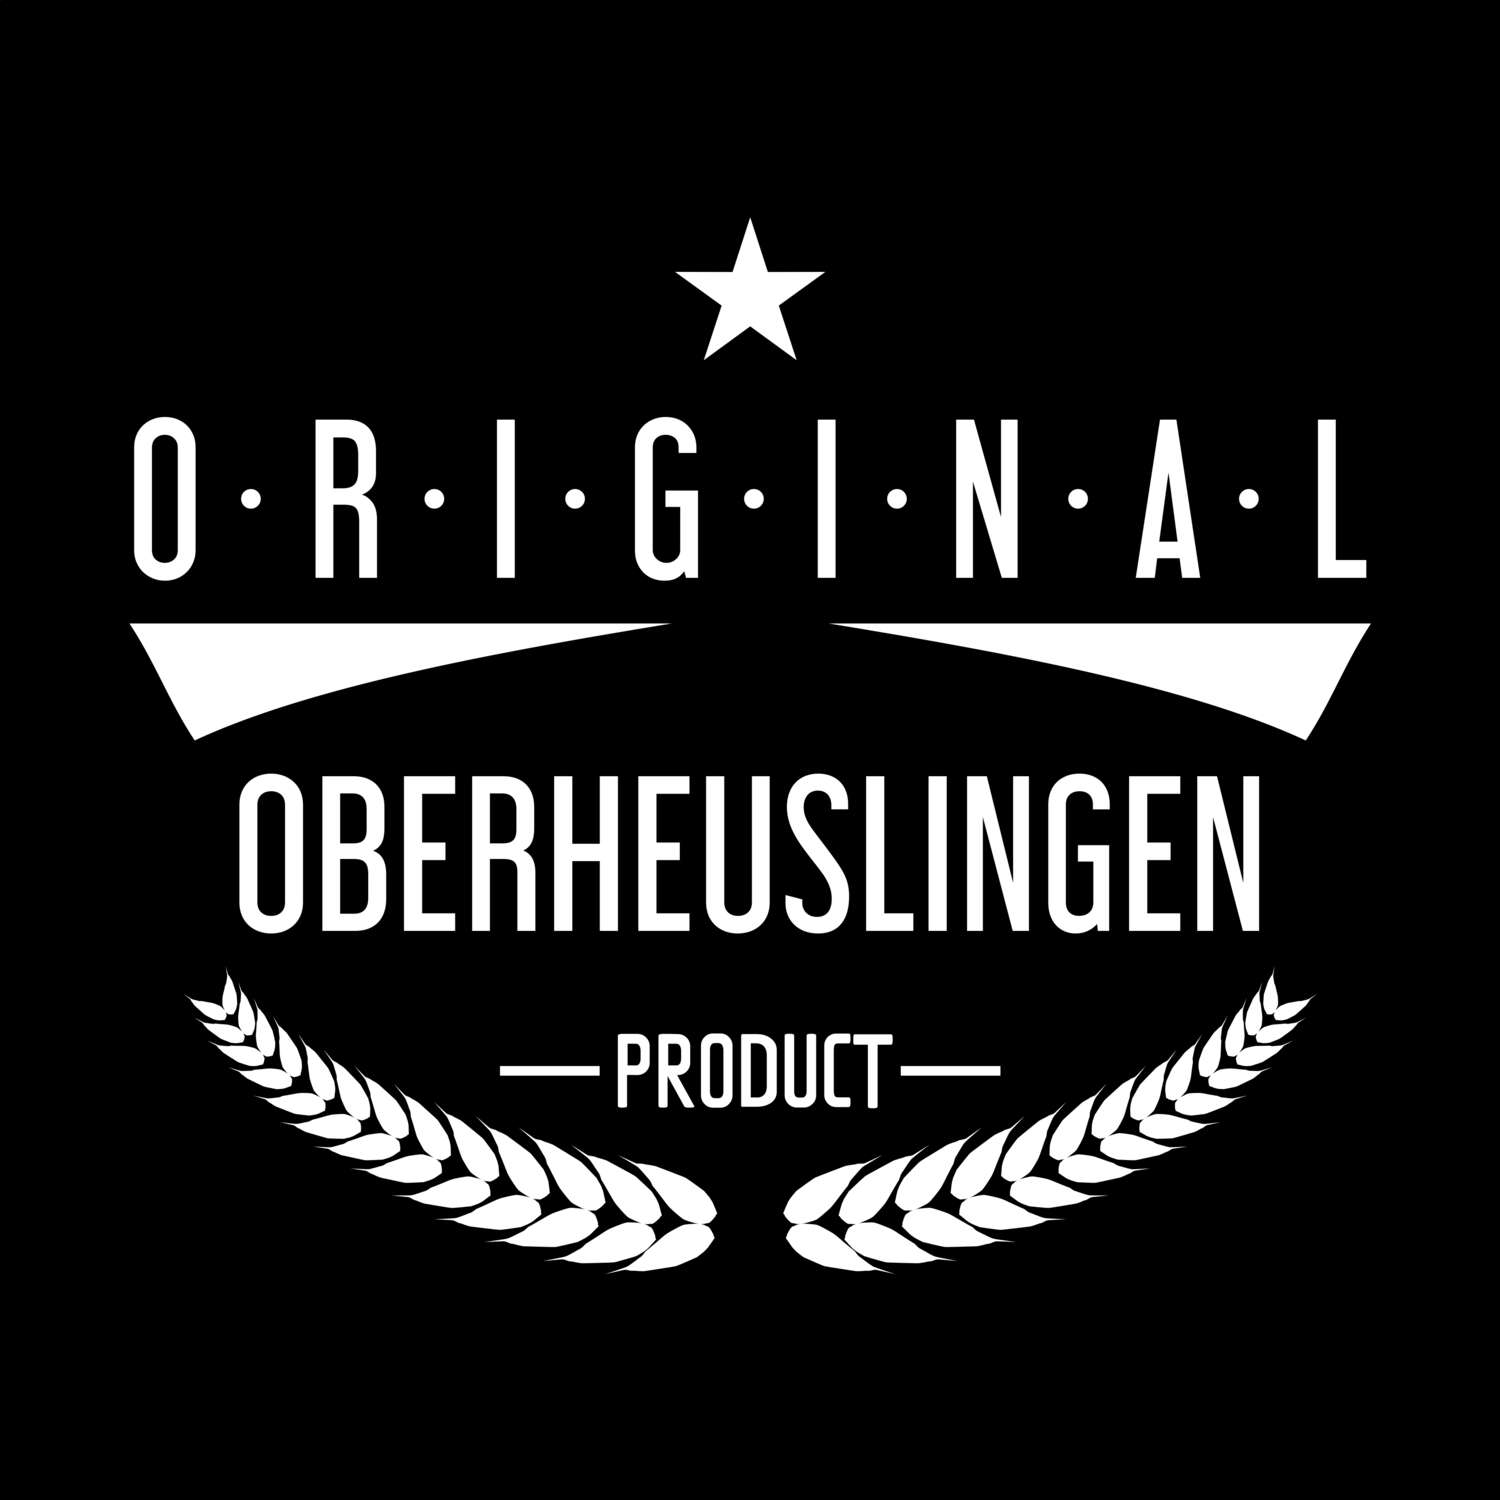 Oberheuslingen T-Shirt »Original Product«